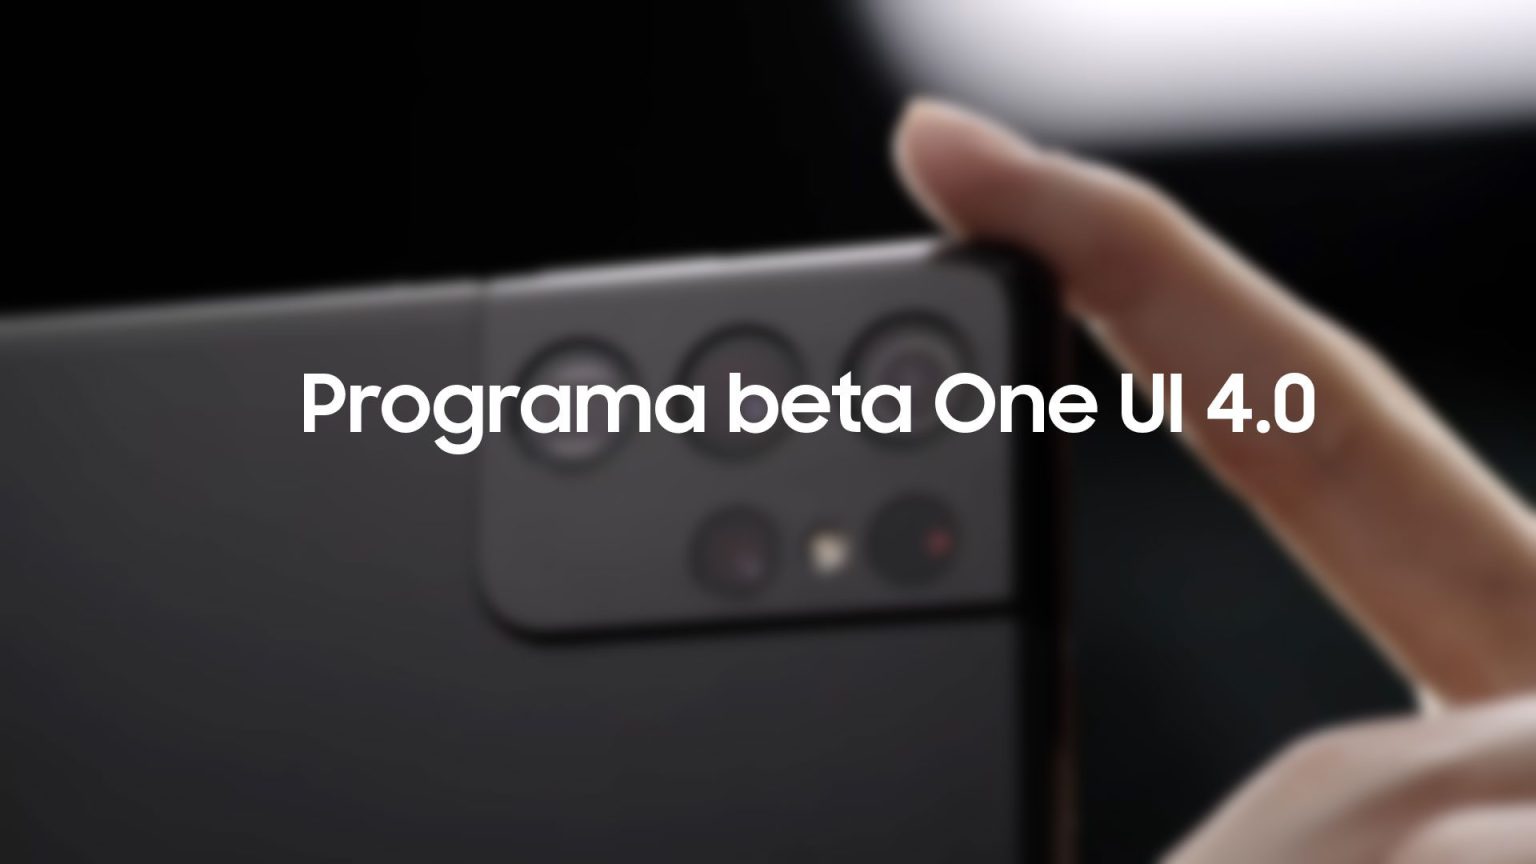 Te contamos los pasos a seguir para acceder al programa beta de One UI 4.0 cuando estén abiertas las inscripciones.